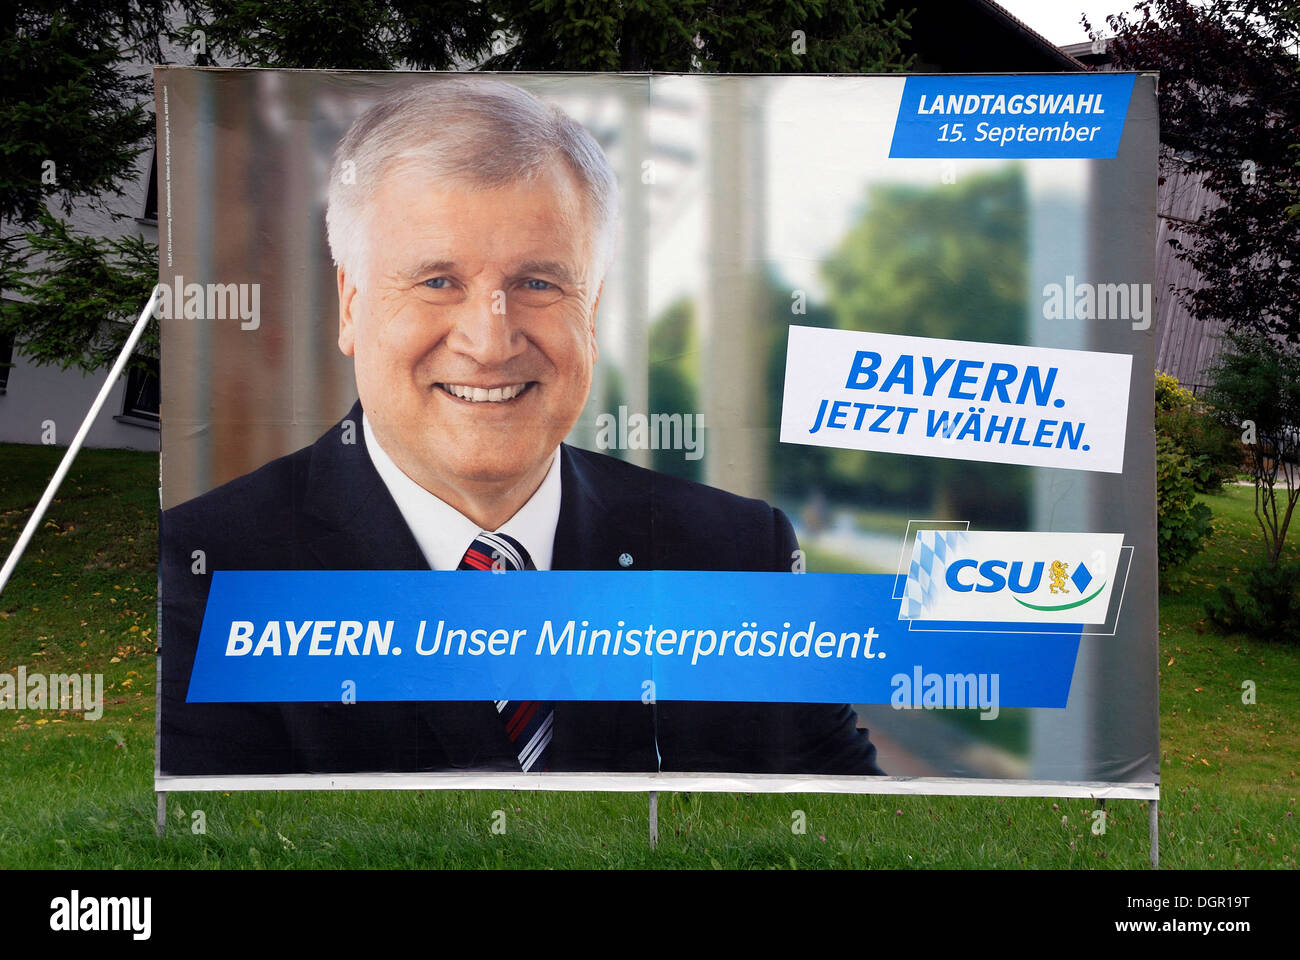 Plakatwerbung der CSU für den bayerischen Ministerpräsidenten Horst Seehofer für Landtagswahl in Bayern am 15.09.2013. Stockfoto